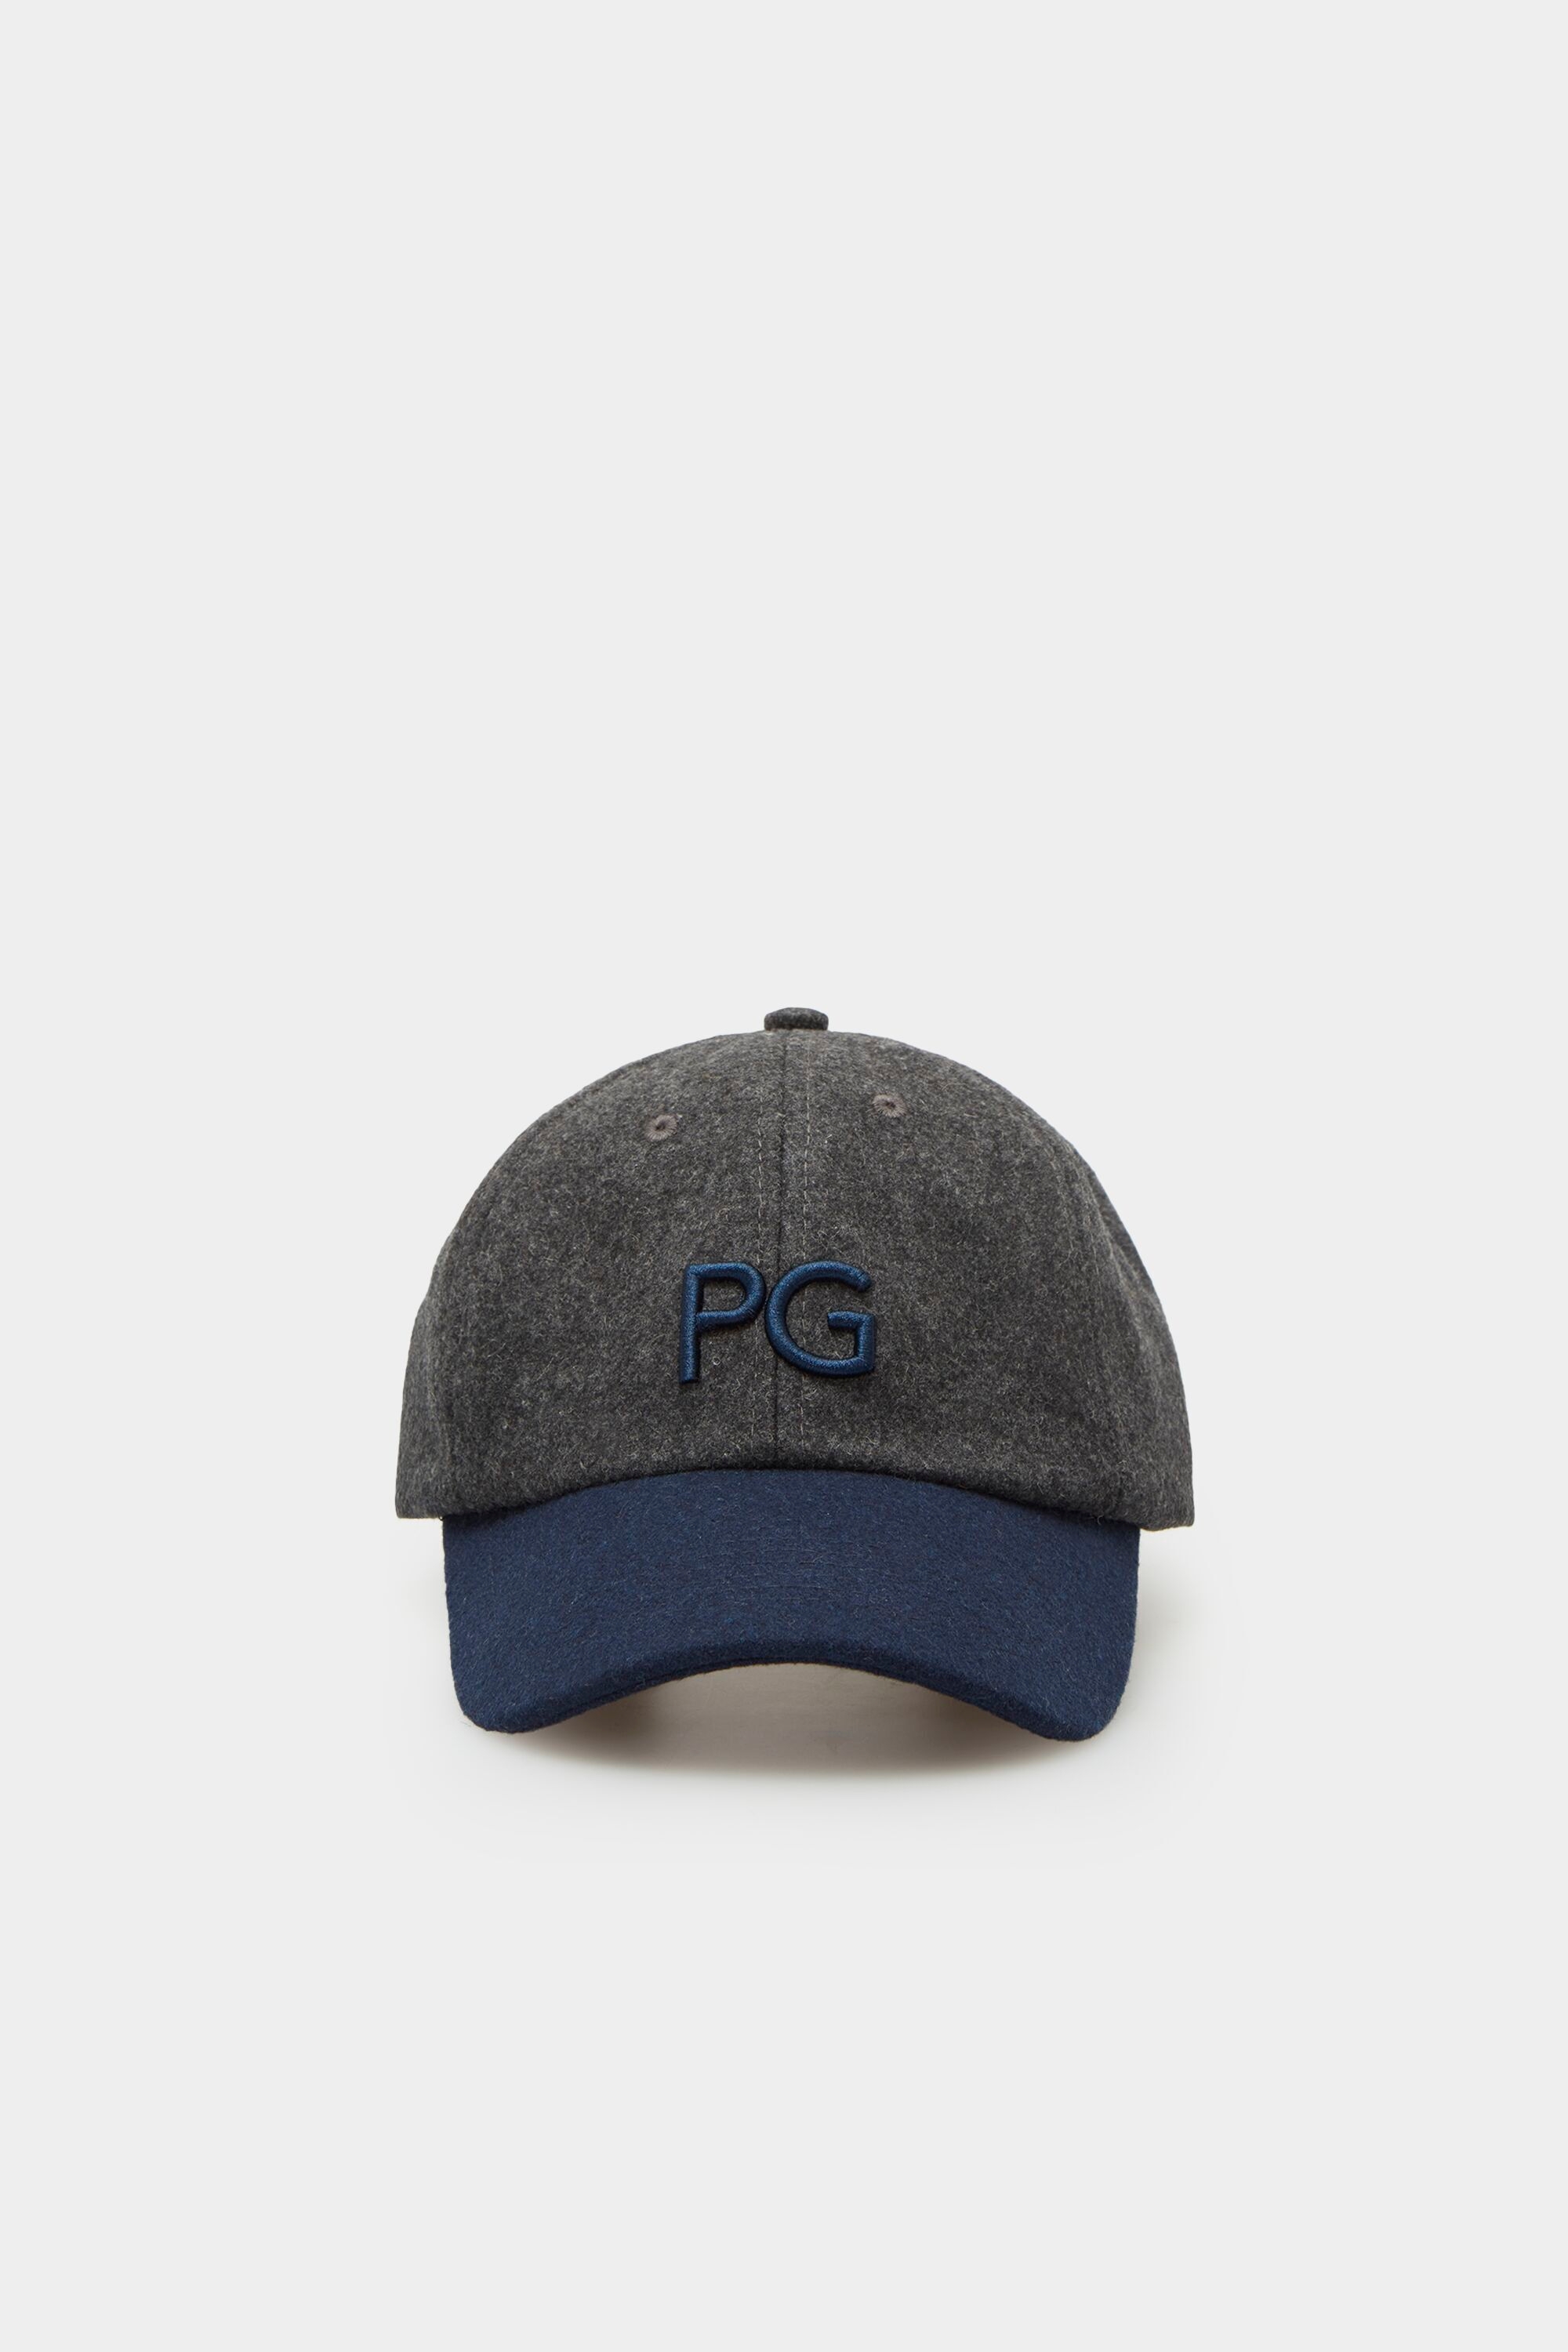 PG baseball cap